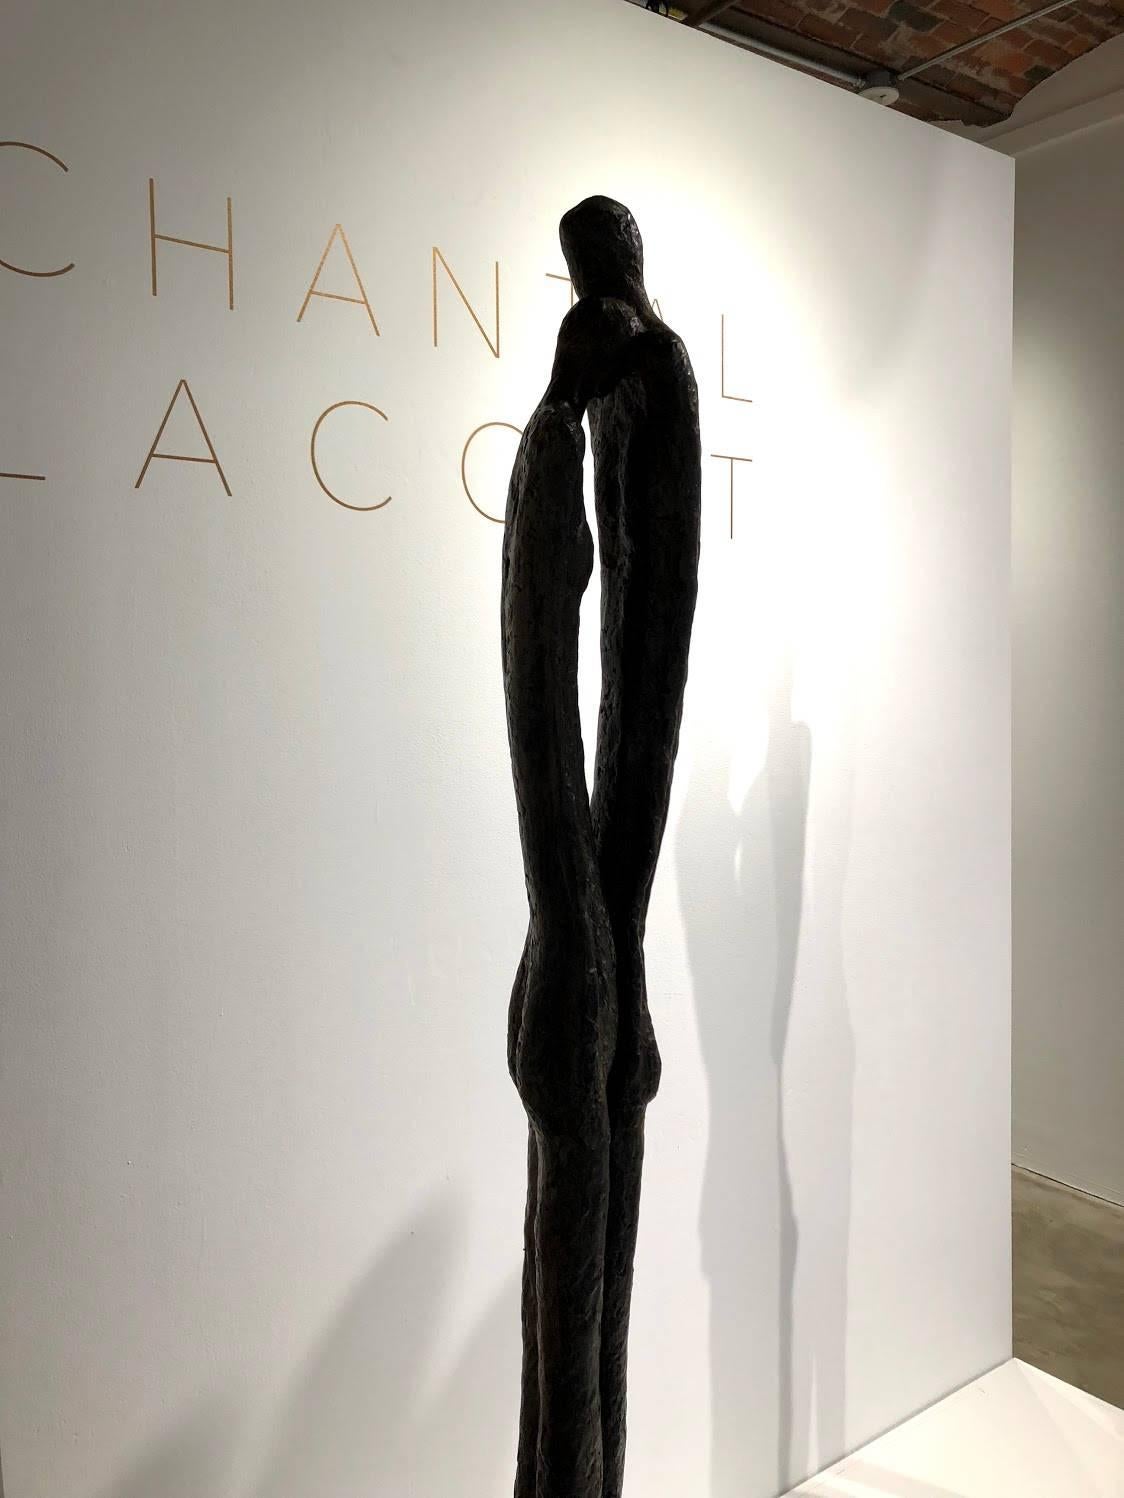 Prélude - Sculpture by Chantal Lacout